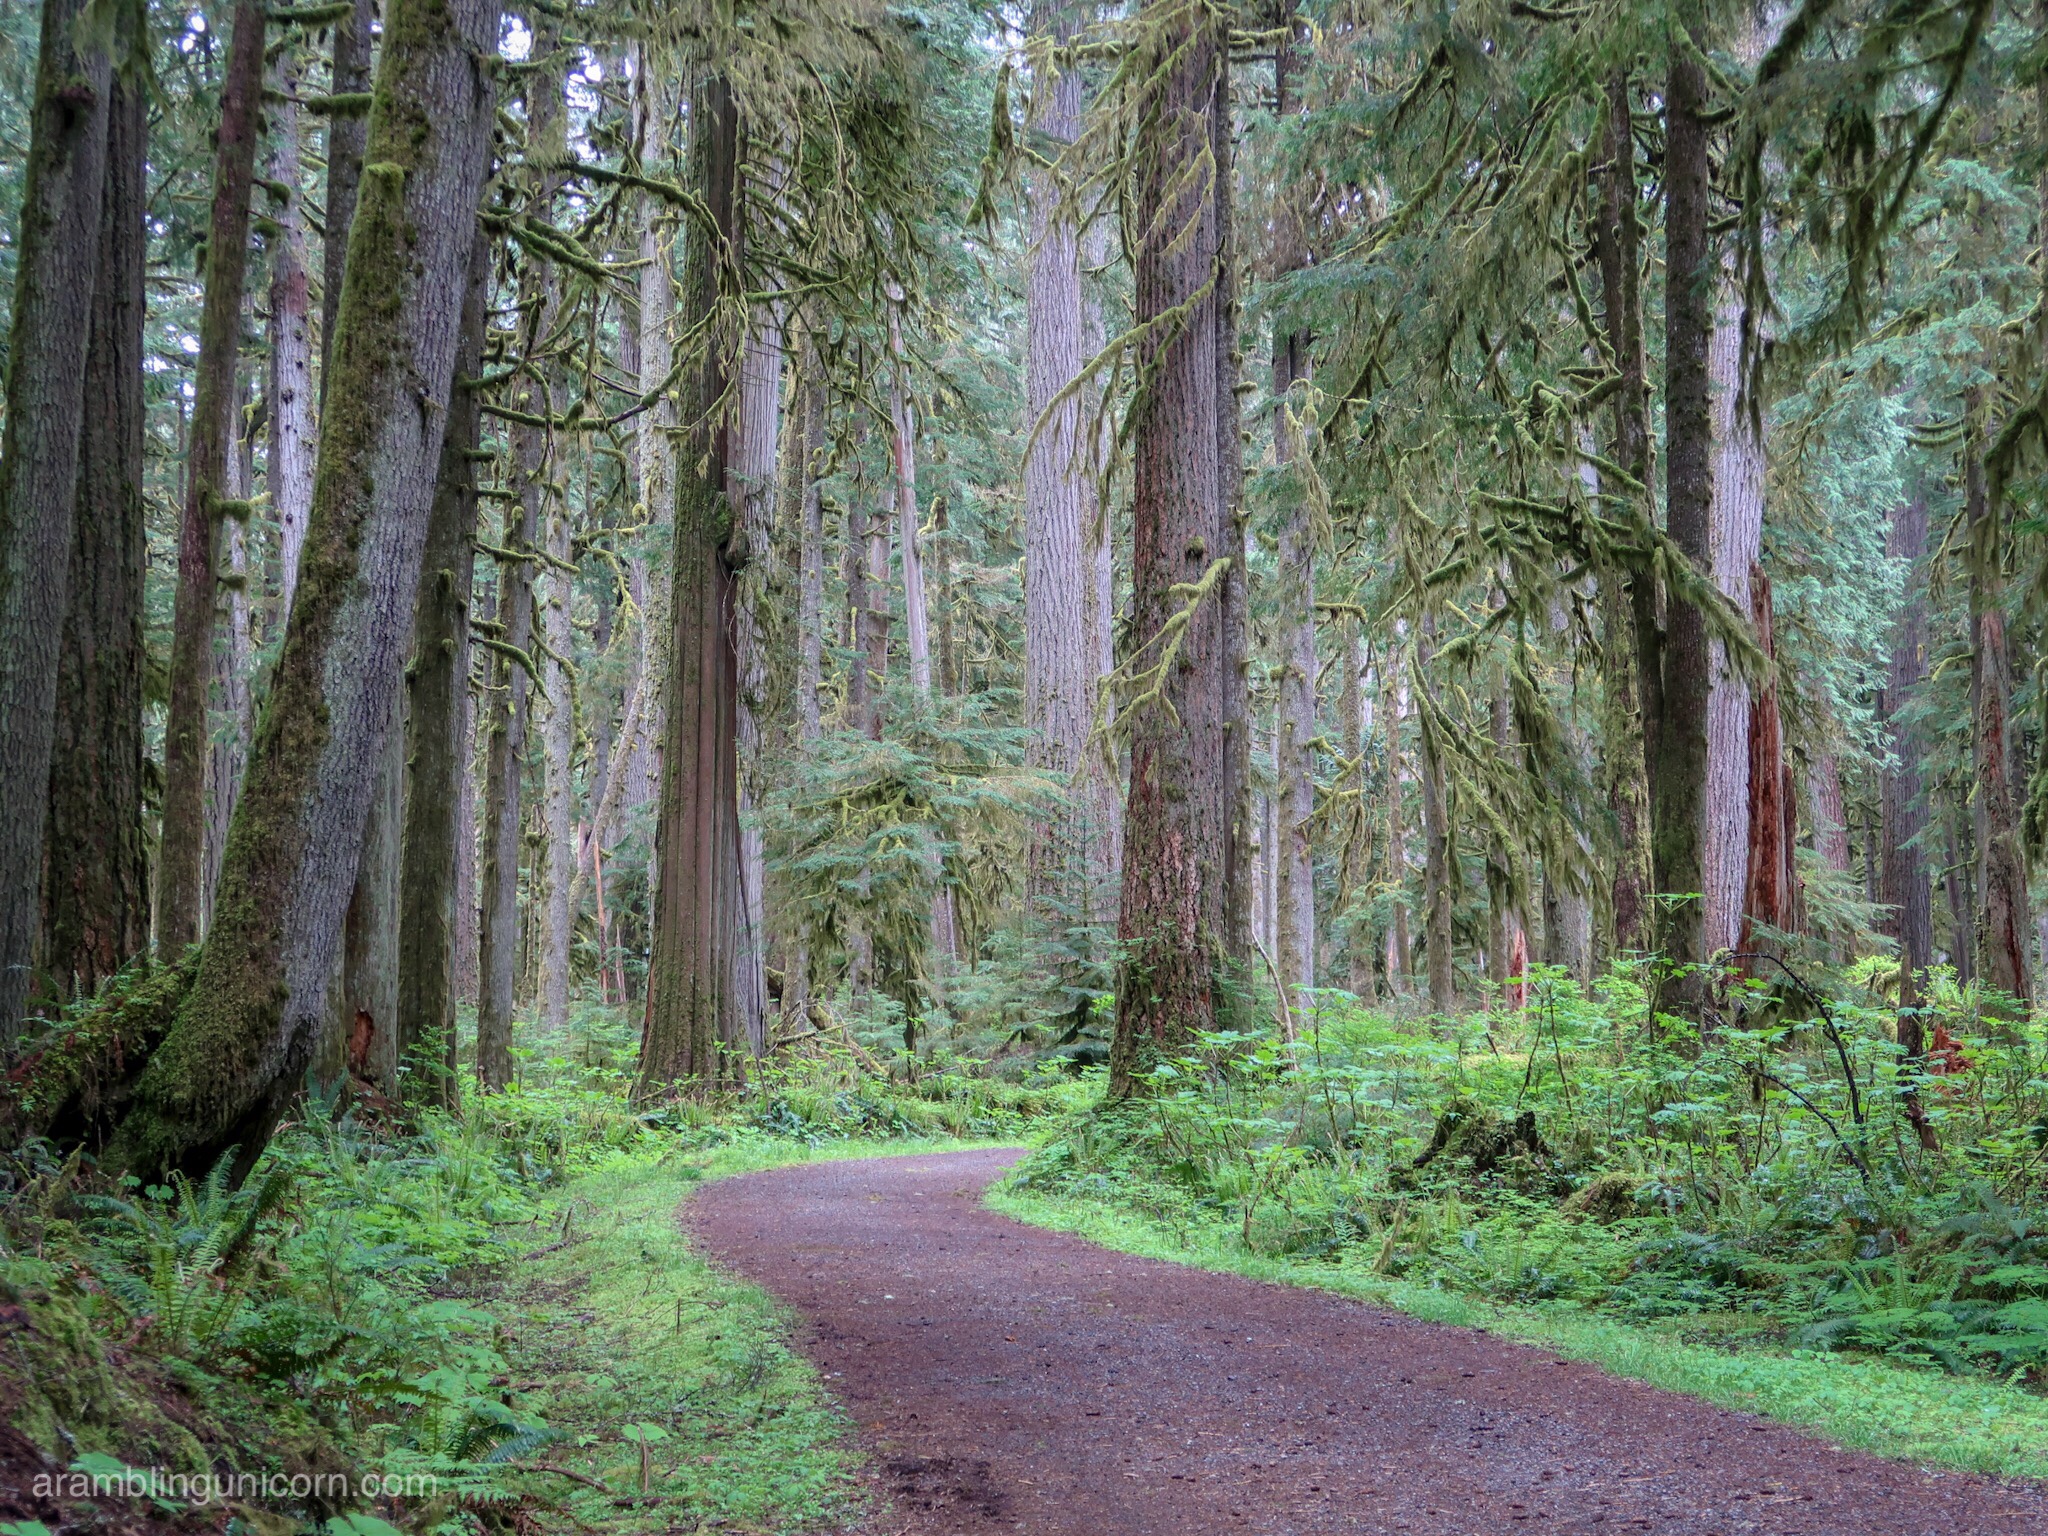 The Carbon River Rainforest: Exploring Mt. Rainier’s Carbon River Trail